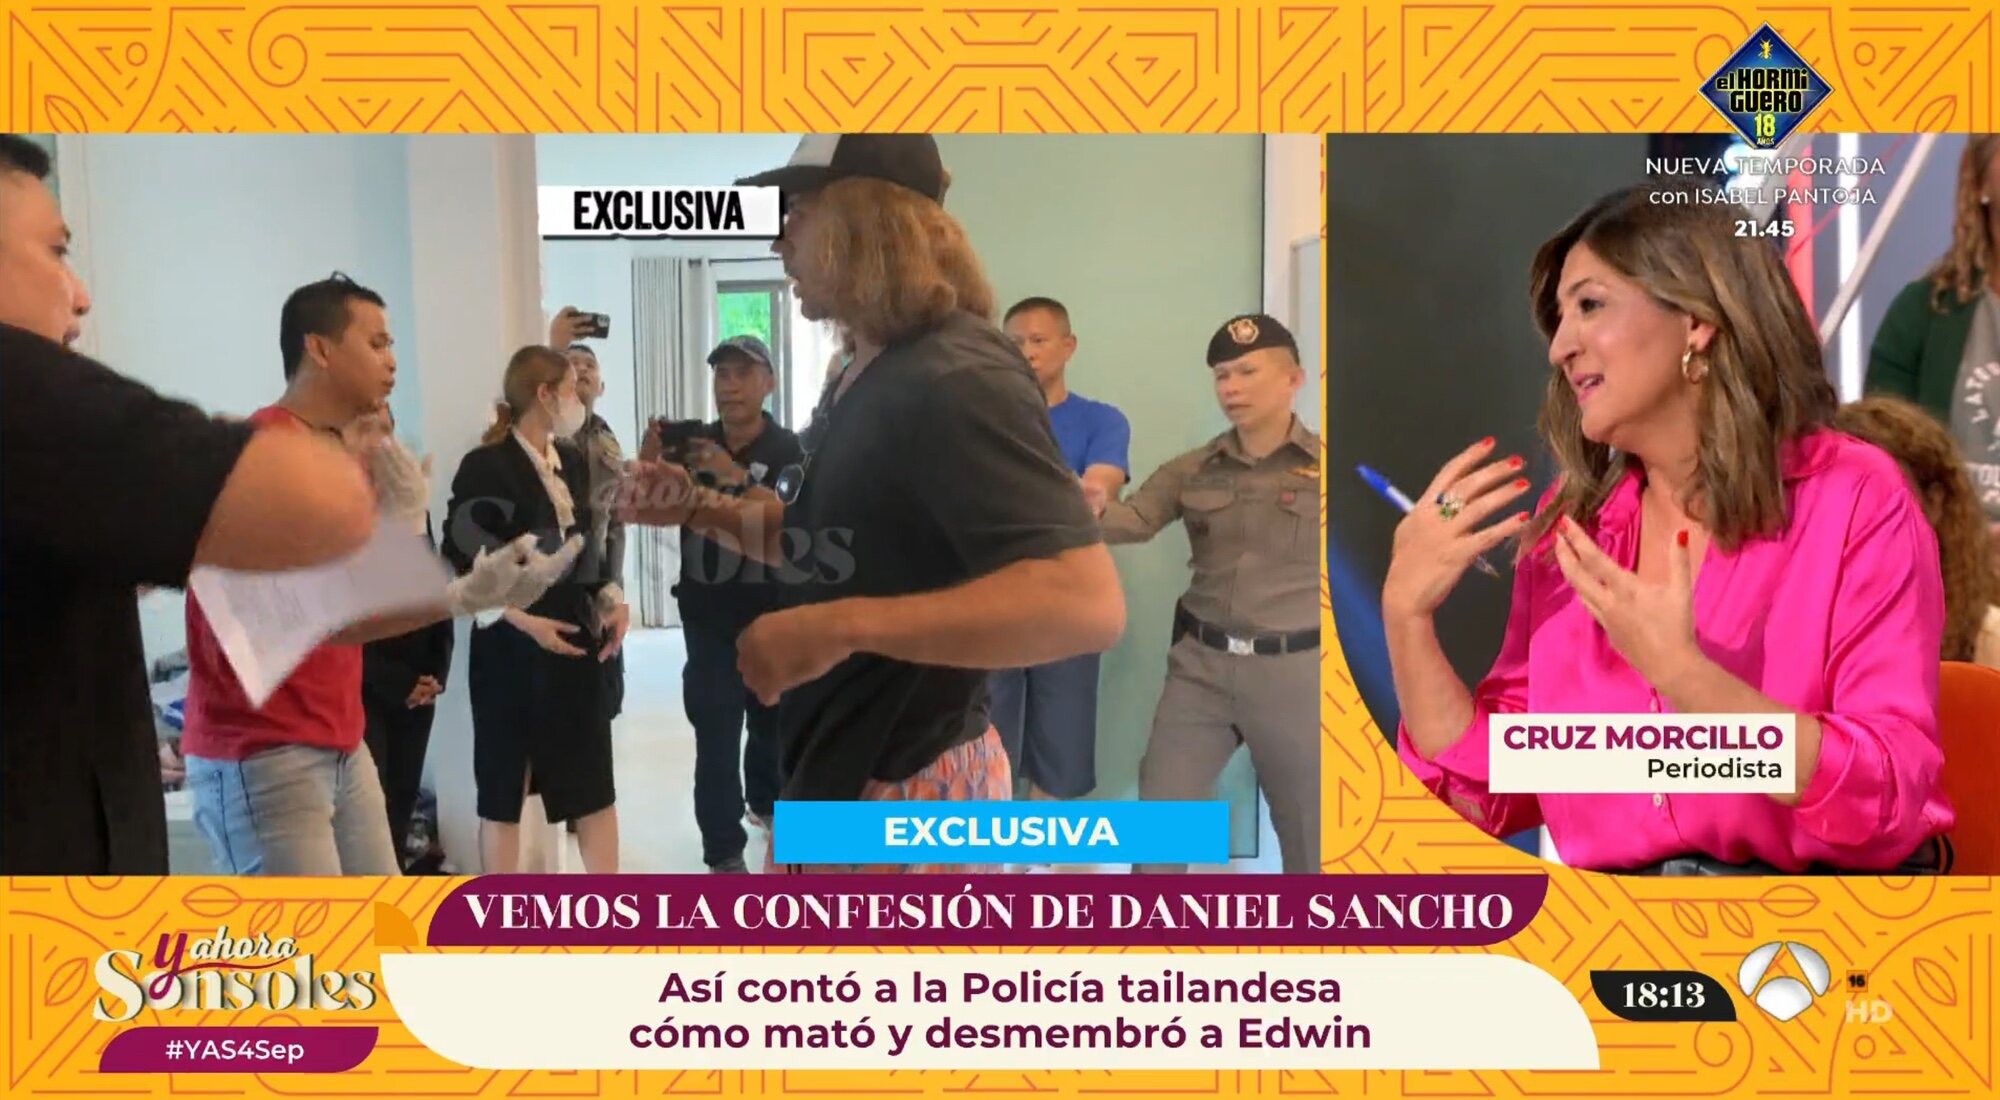 Cruz Morcillo debuta en 'Y ahora, Sonsoles' hablando de Daniel Sancho